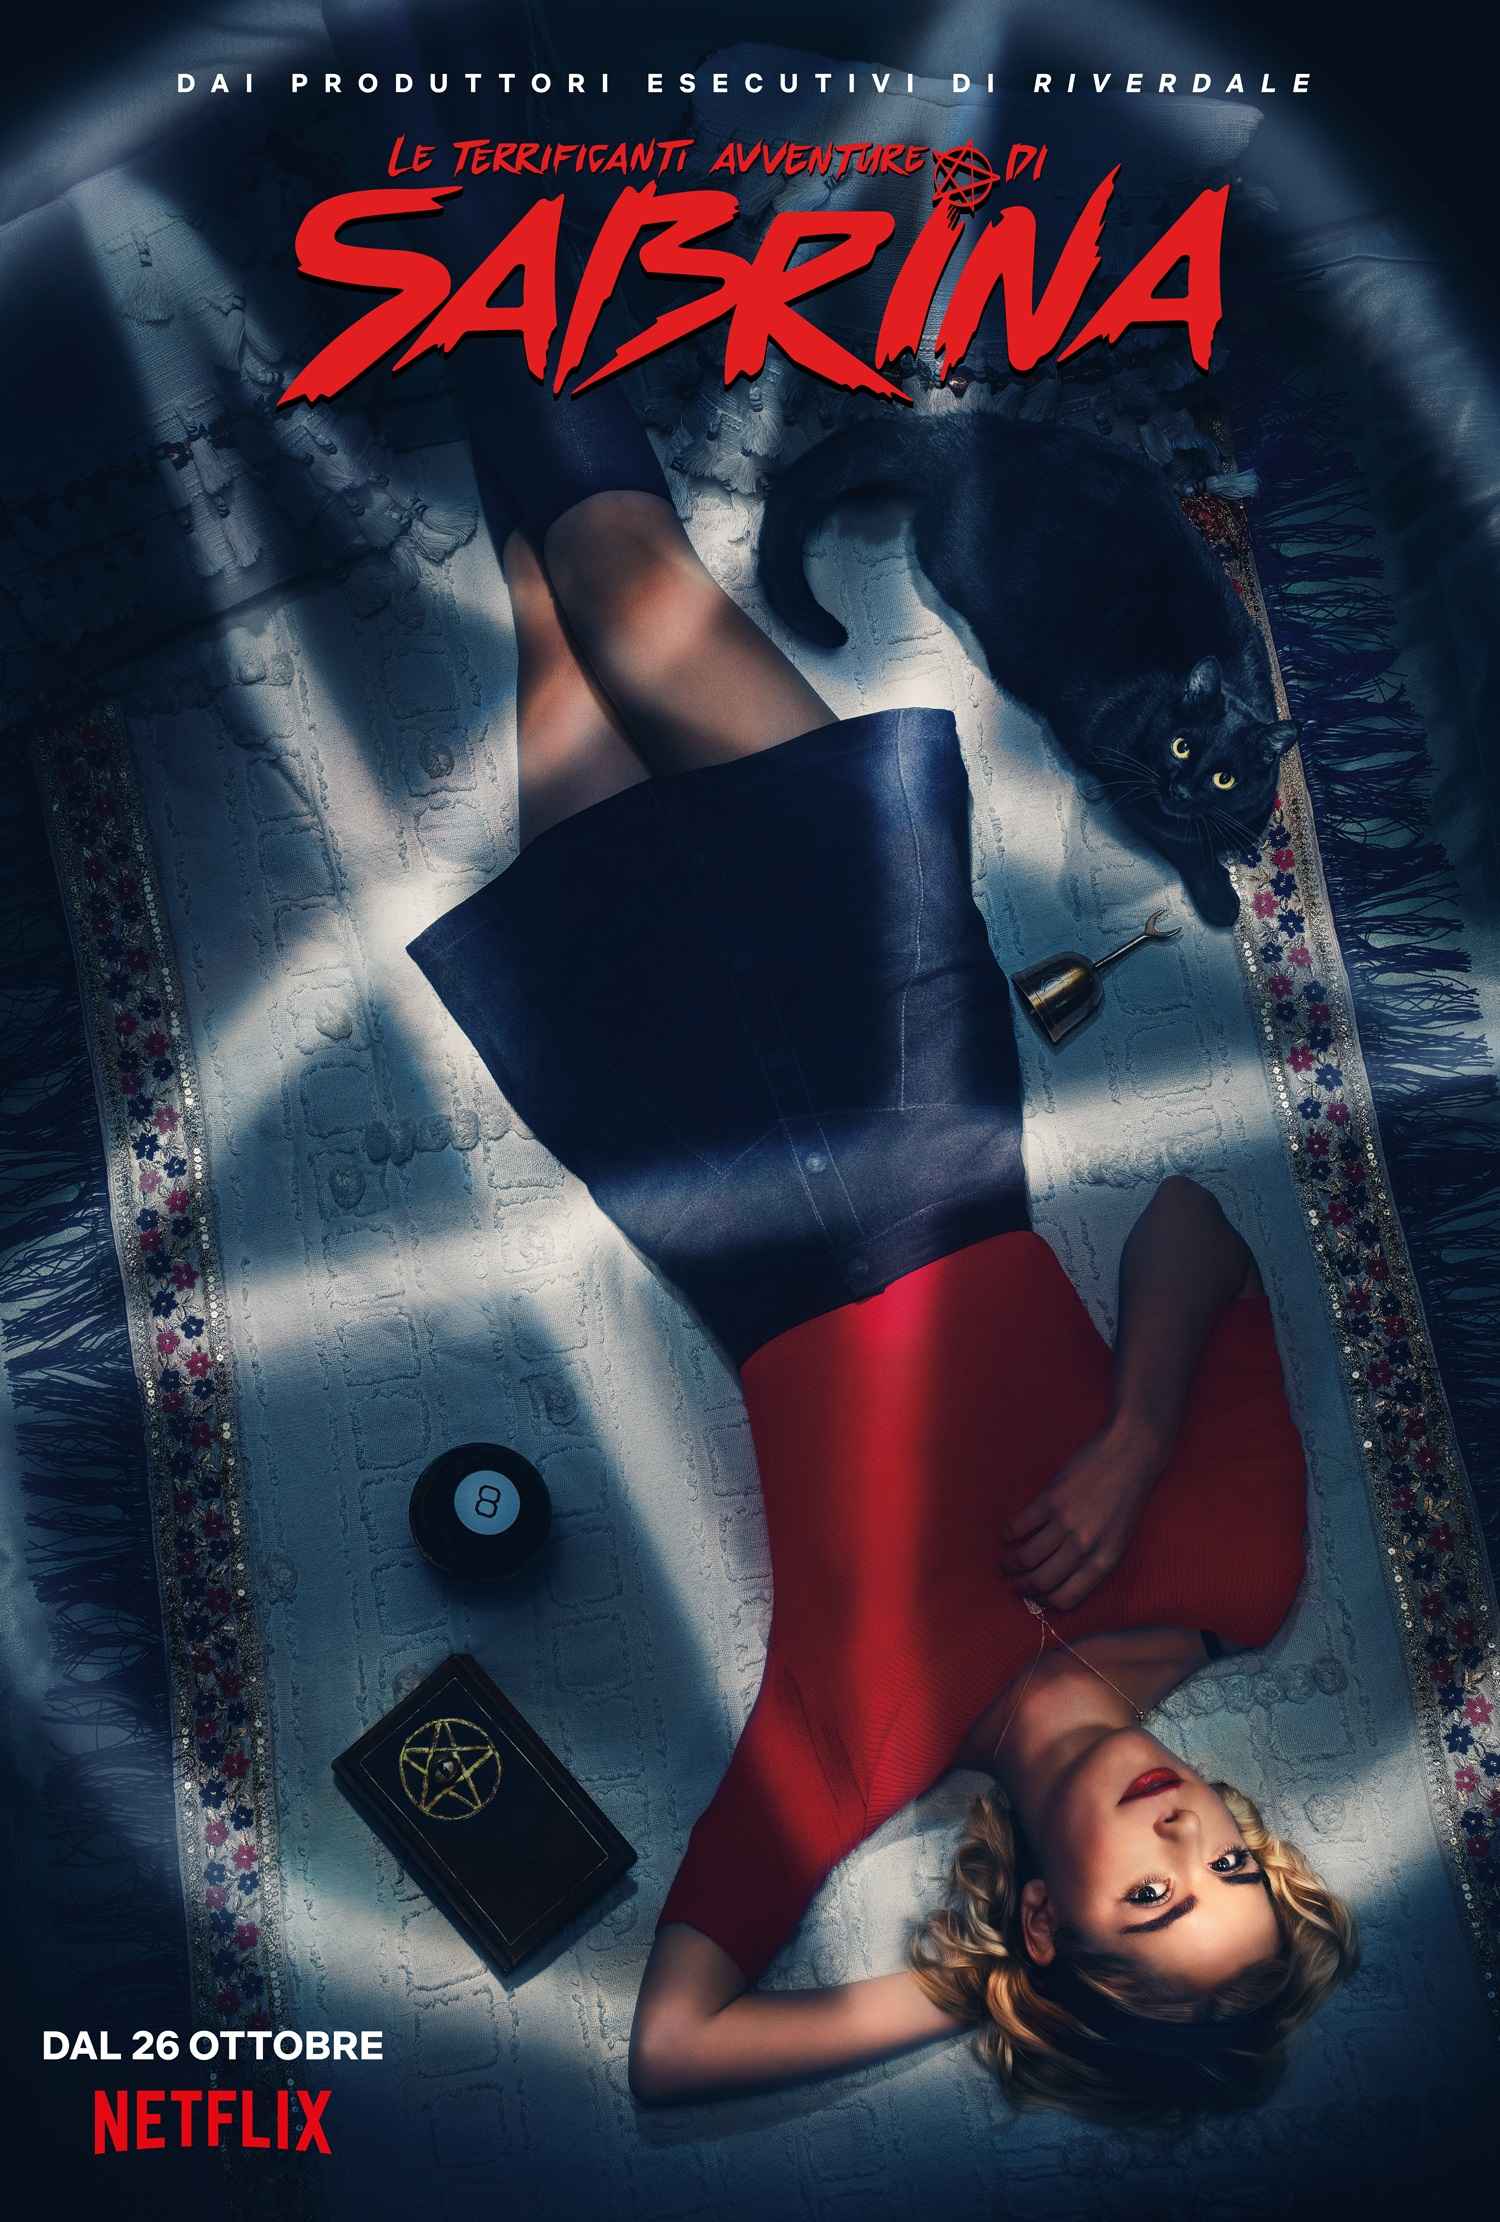 Netflix annuncia il trailer e la locandina ufficiale di Le terrificanti avventure di Sabrina